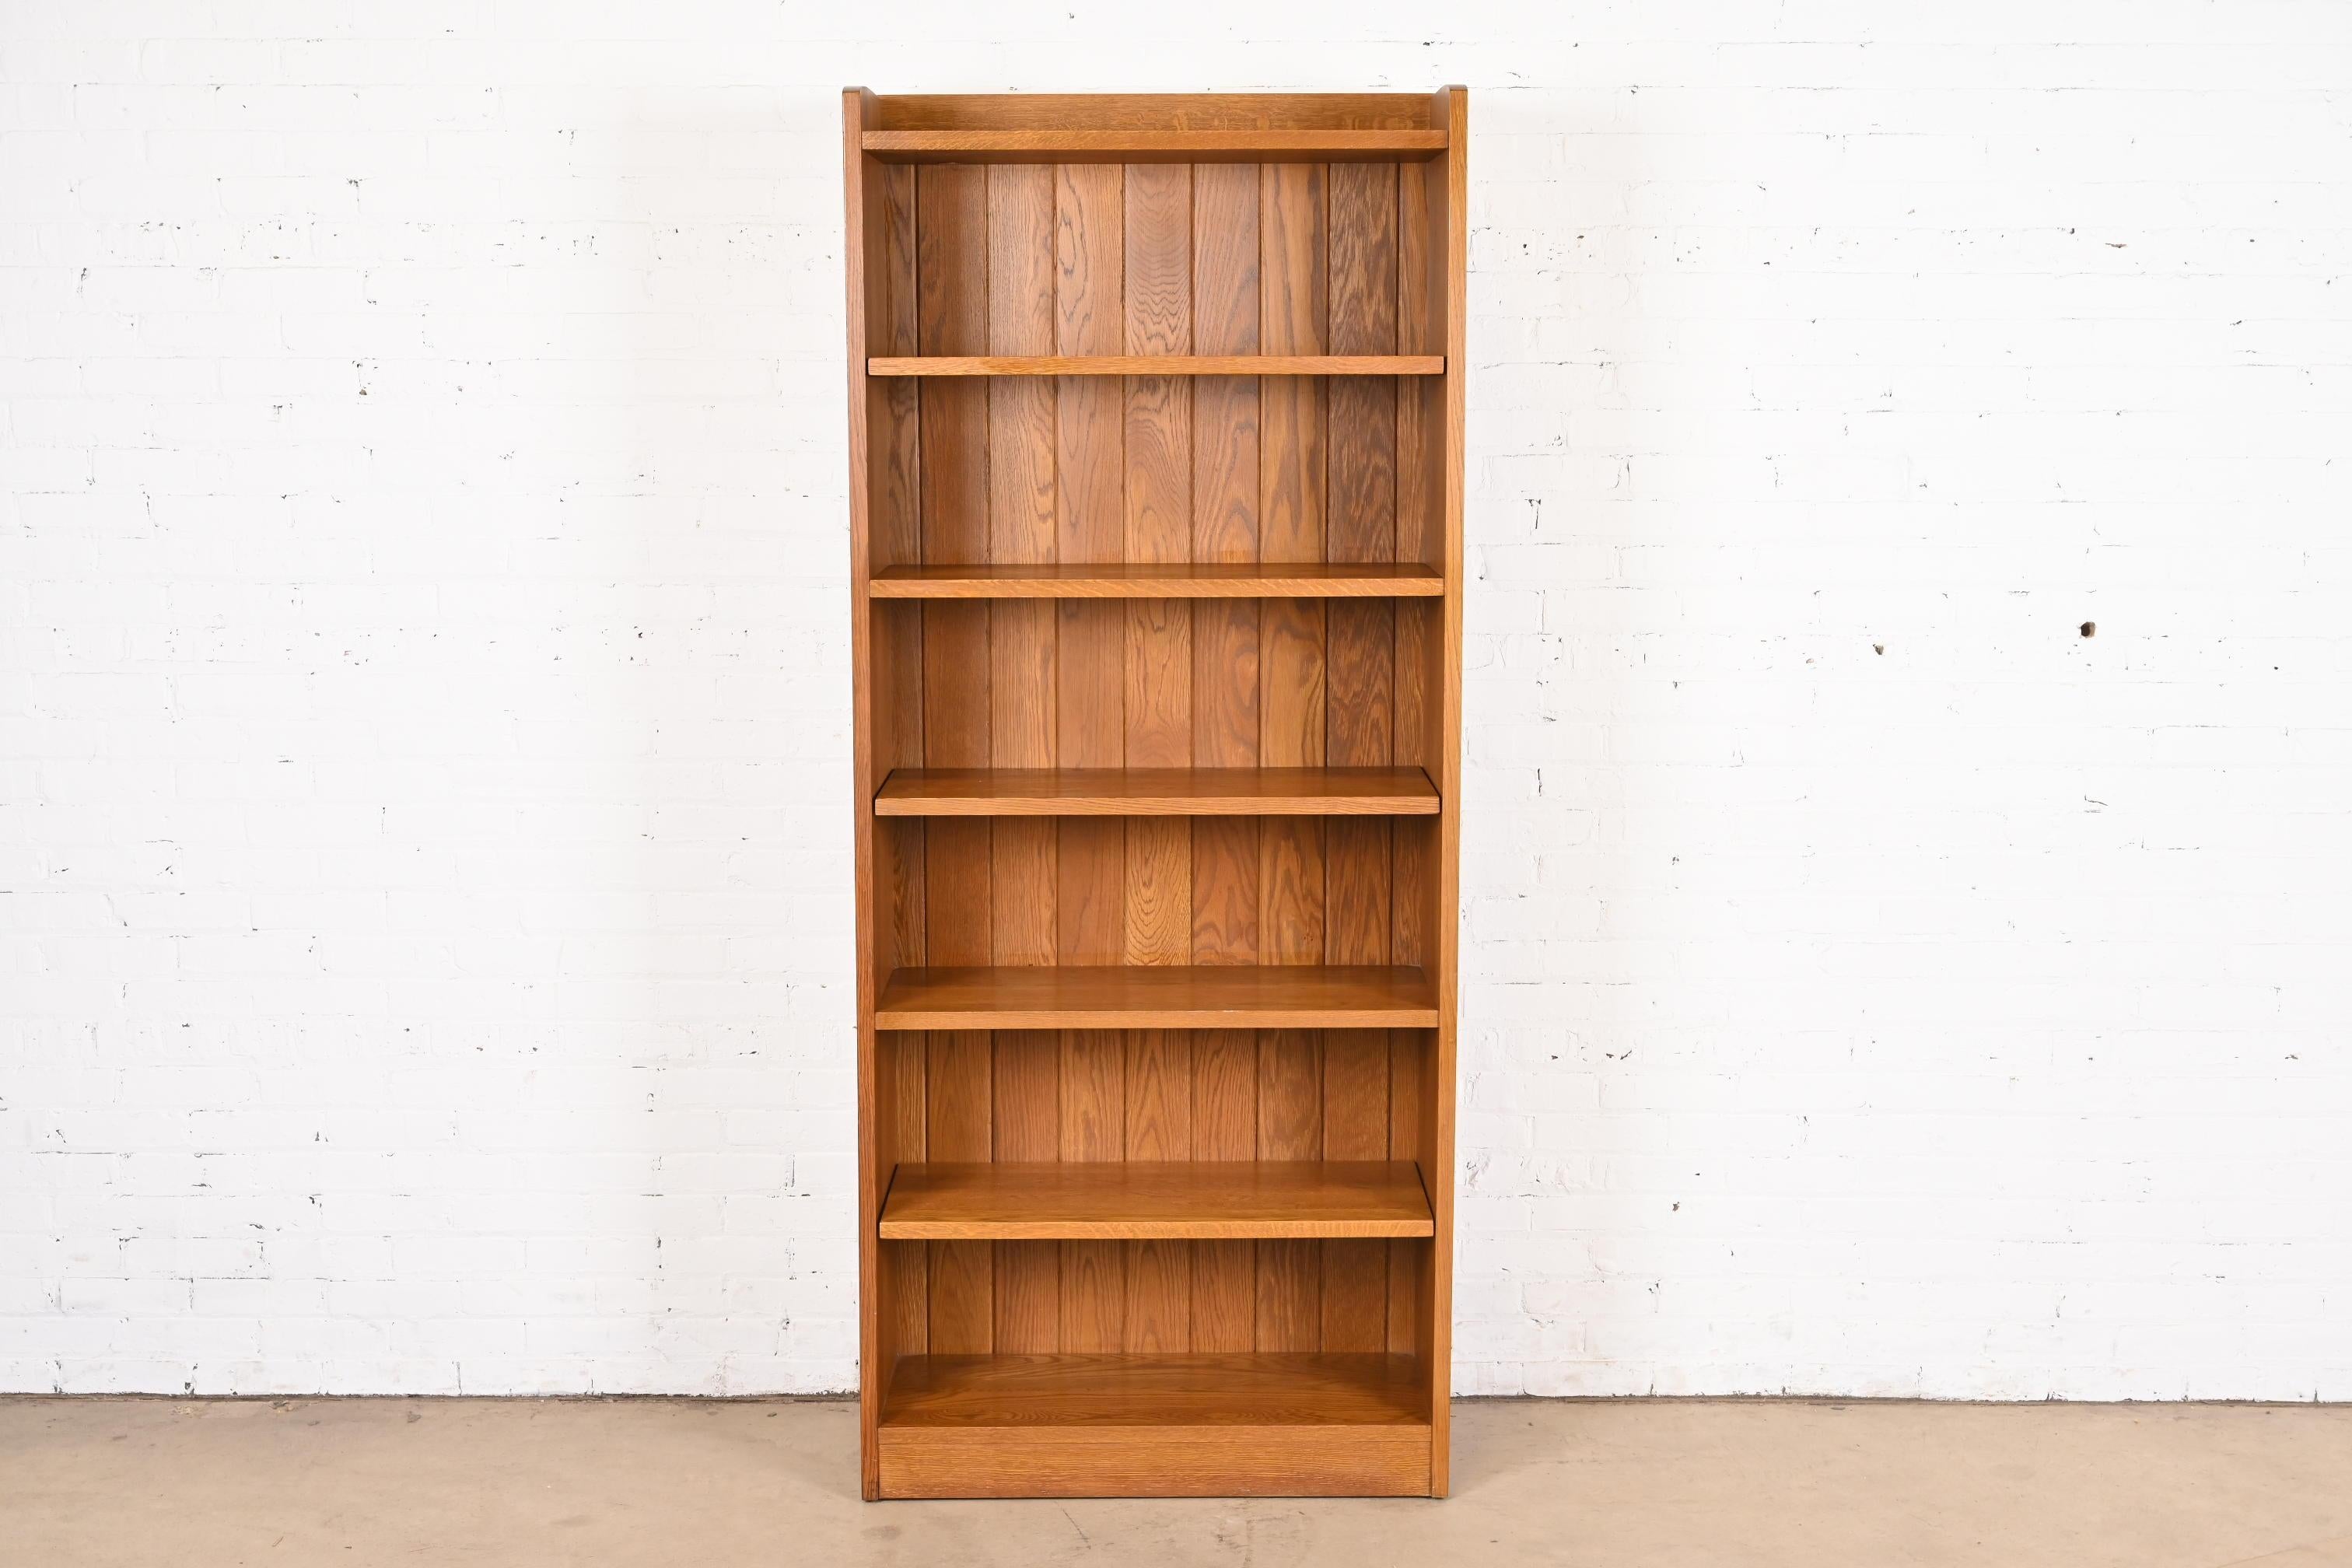 Ein schönes hohes Bücherregal aus massiver Eiche im Missions- oder Arts & Crafts-Stil

Von L.G. & J.G. Stickley

USA, 1990er Jahre

Maße: 33,75 